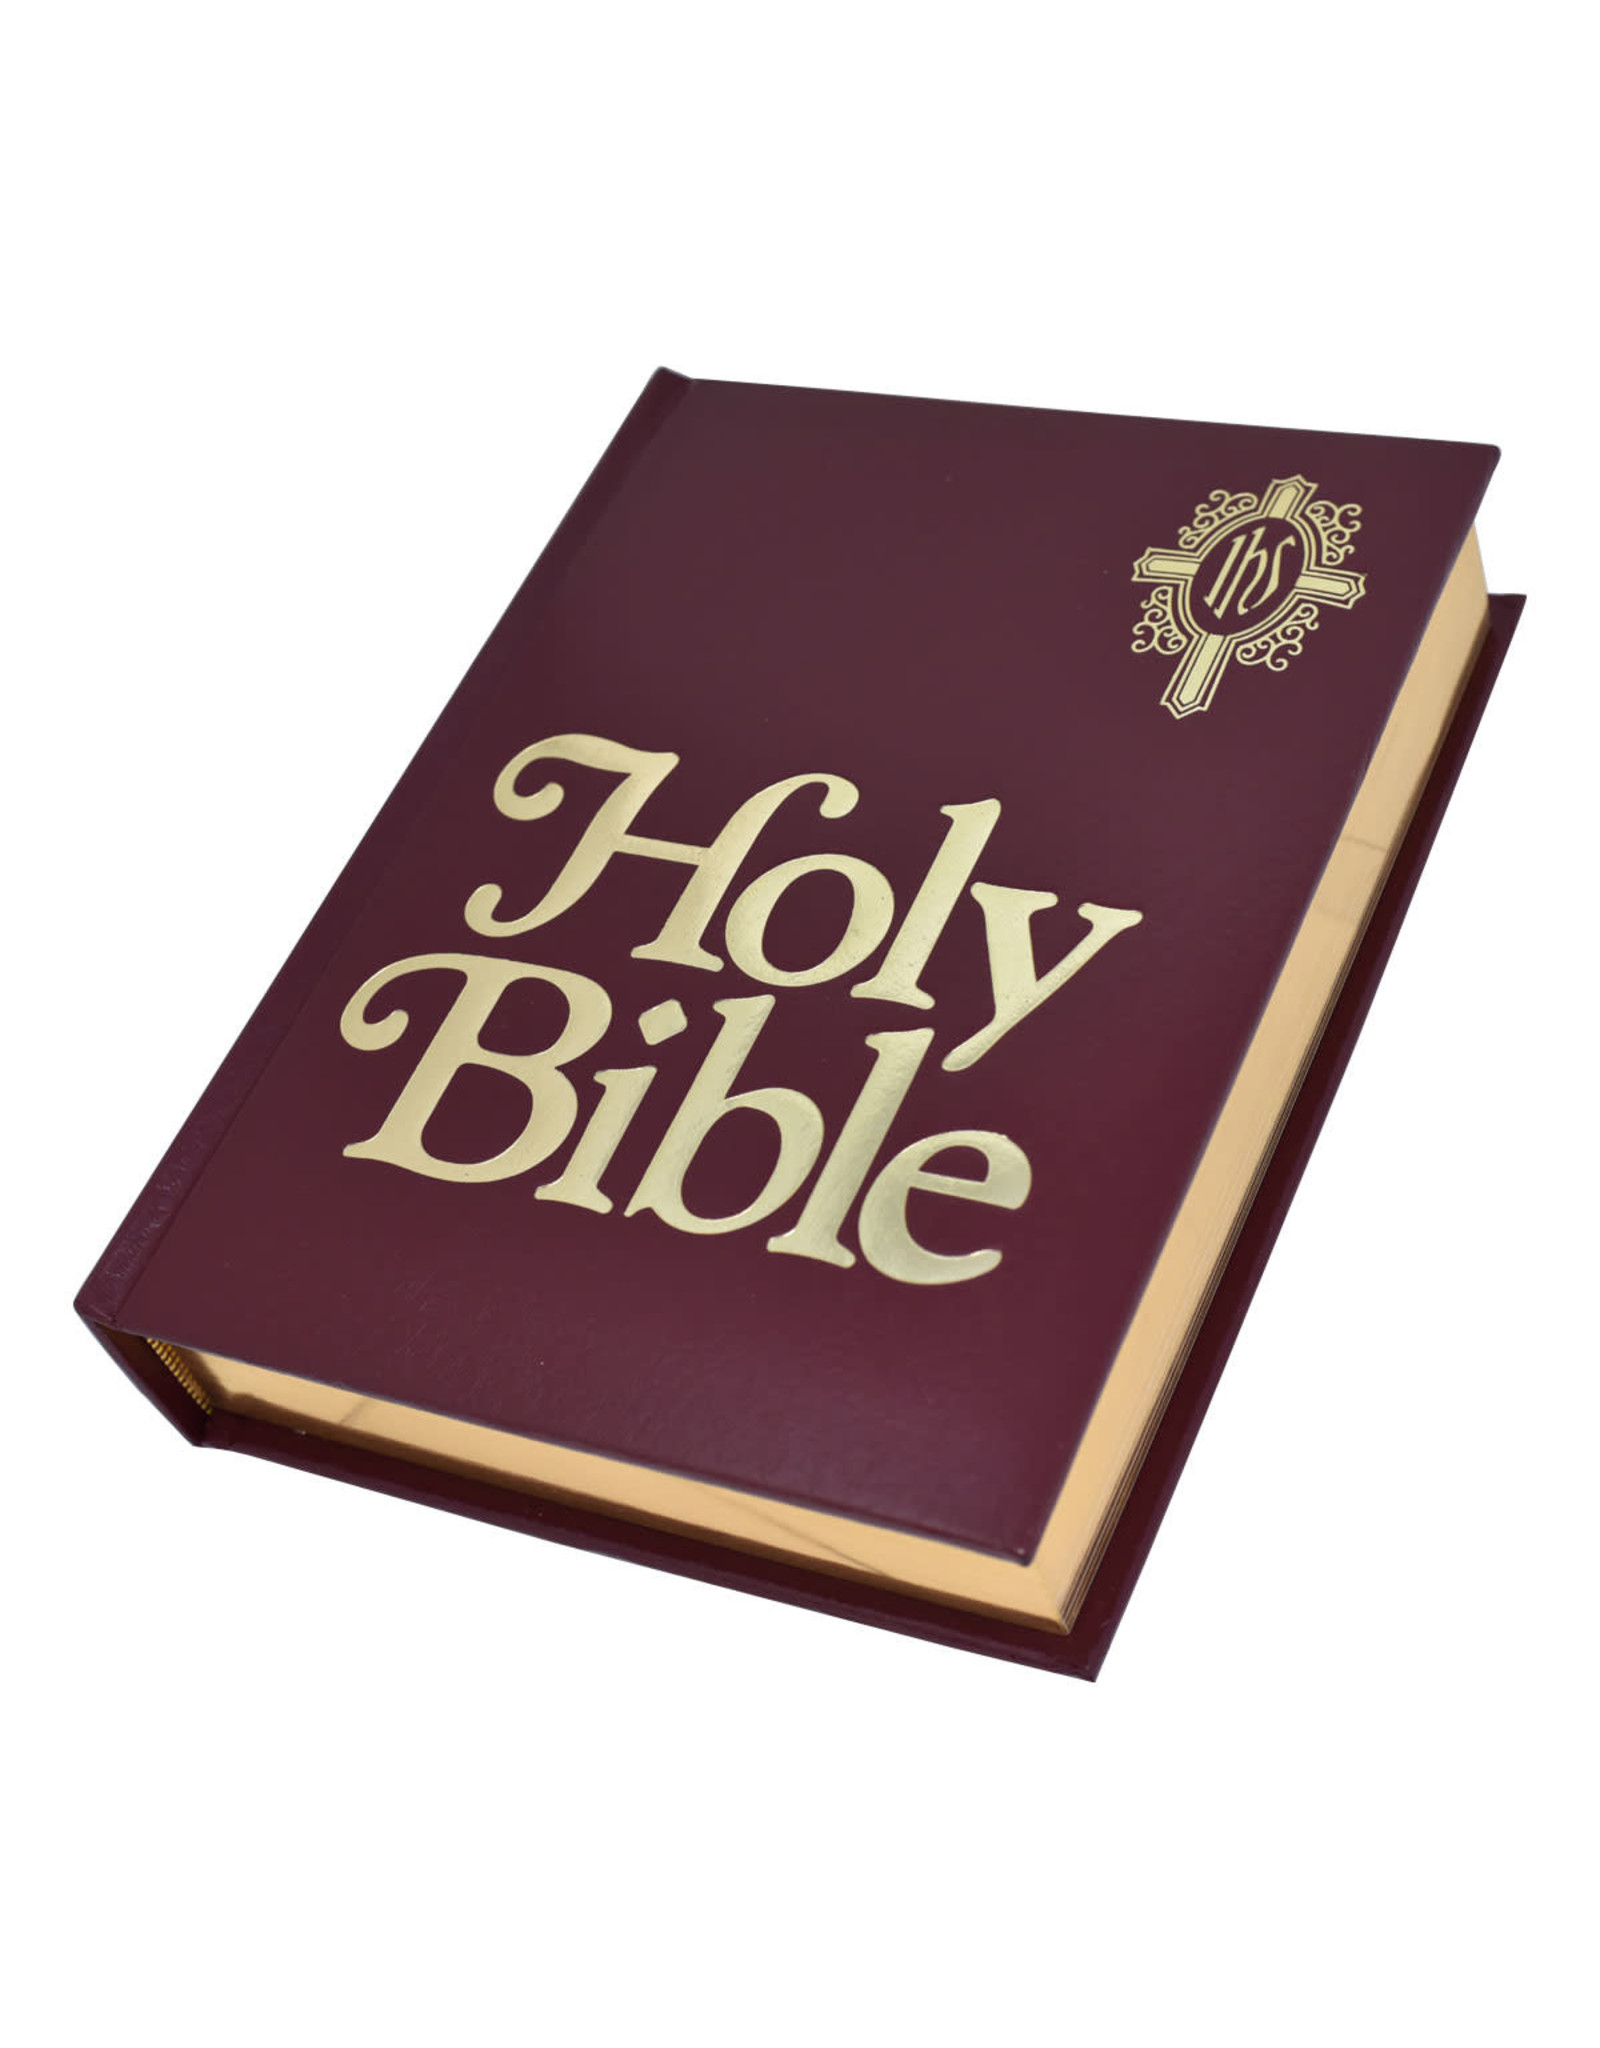 New Catholic Bible Family Edition - Black, Burgundy or White